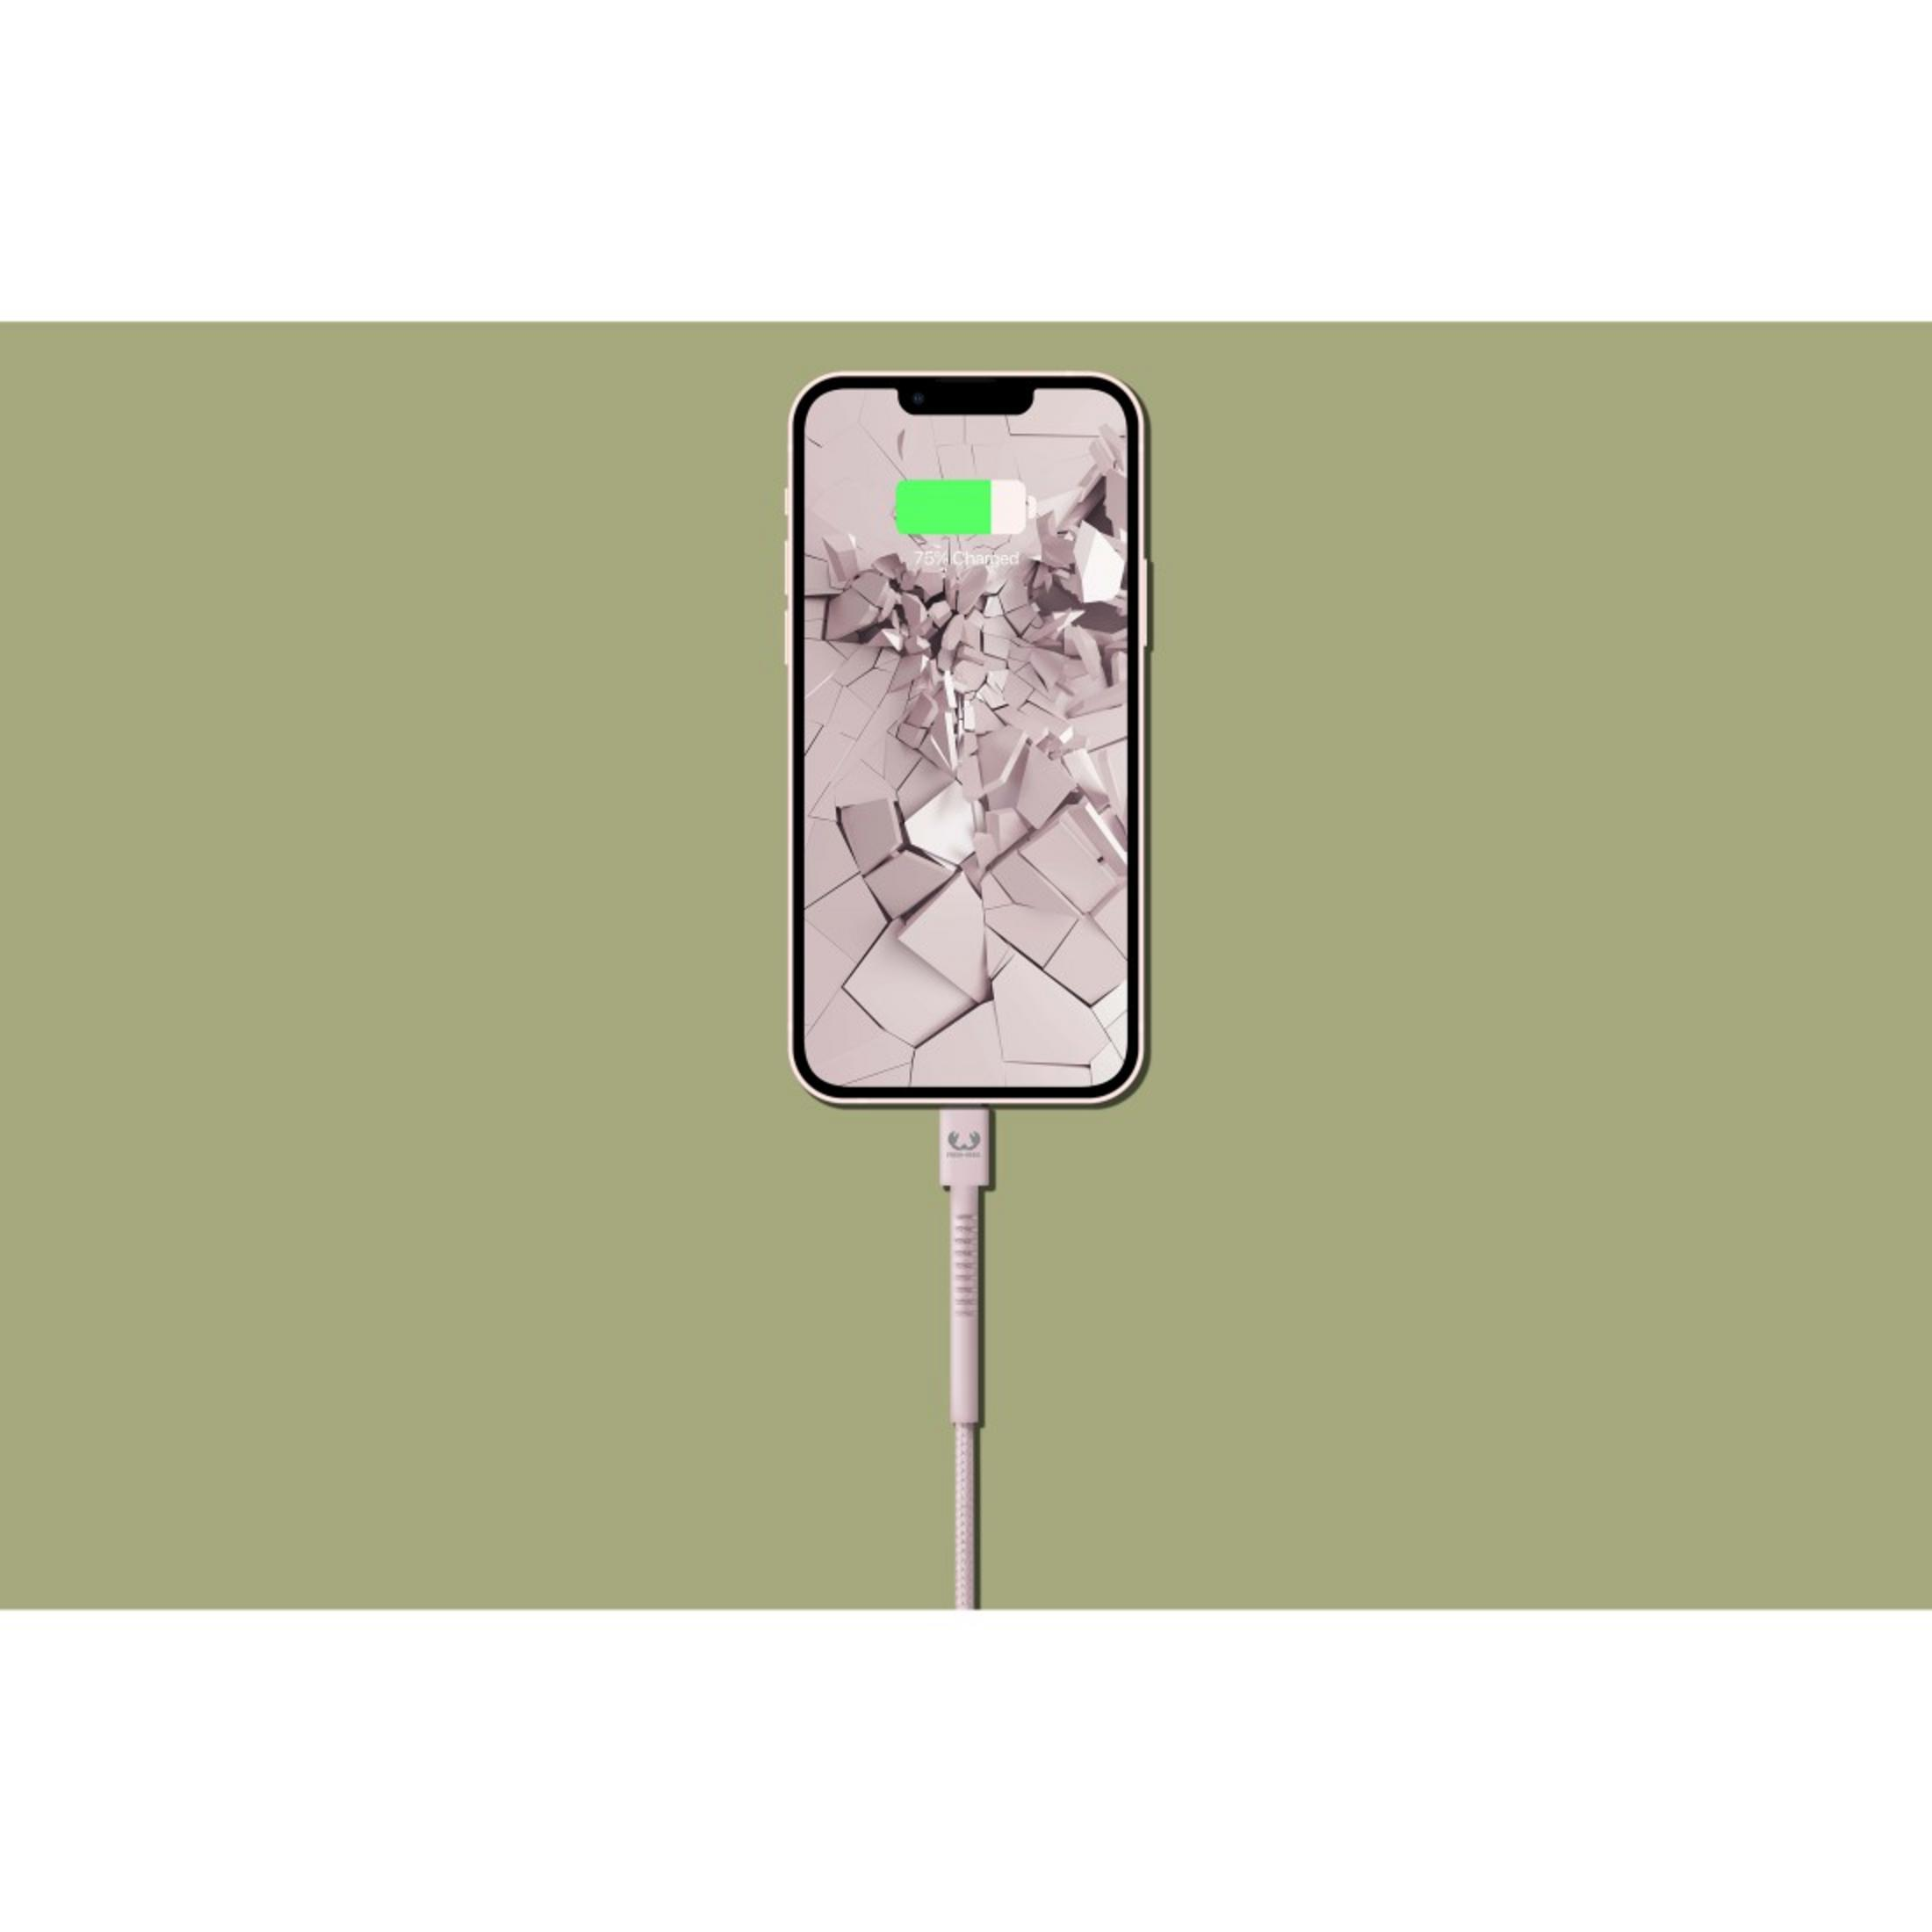 FRESH \'N REBEL USB Apple 2.0m, - Smokey Pink Fabriq - m, 2 cable Lightning Ladekabel